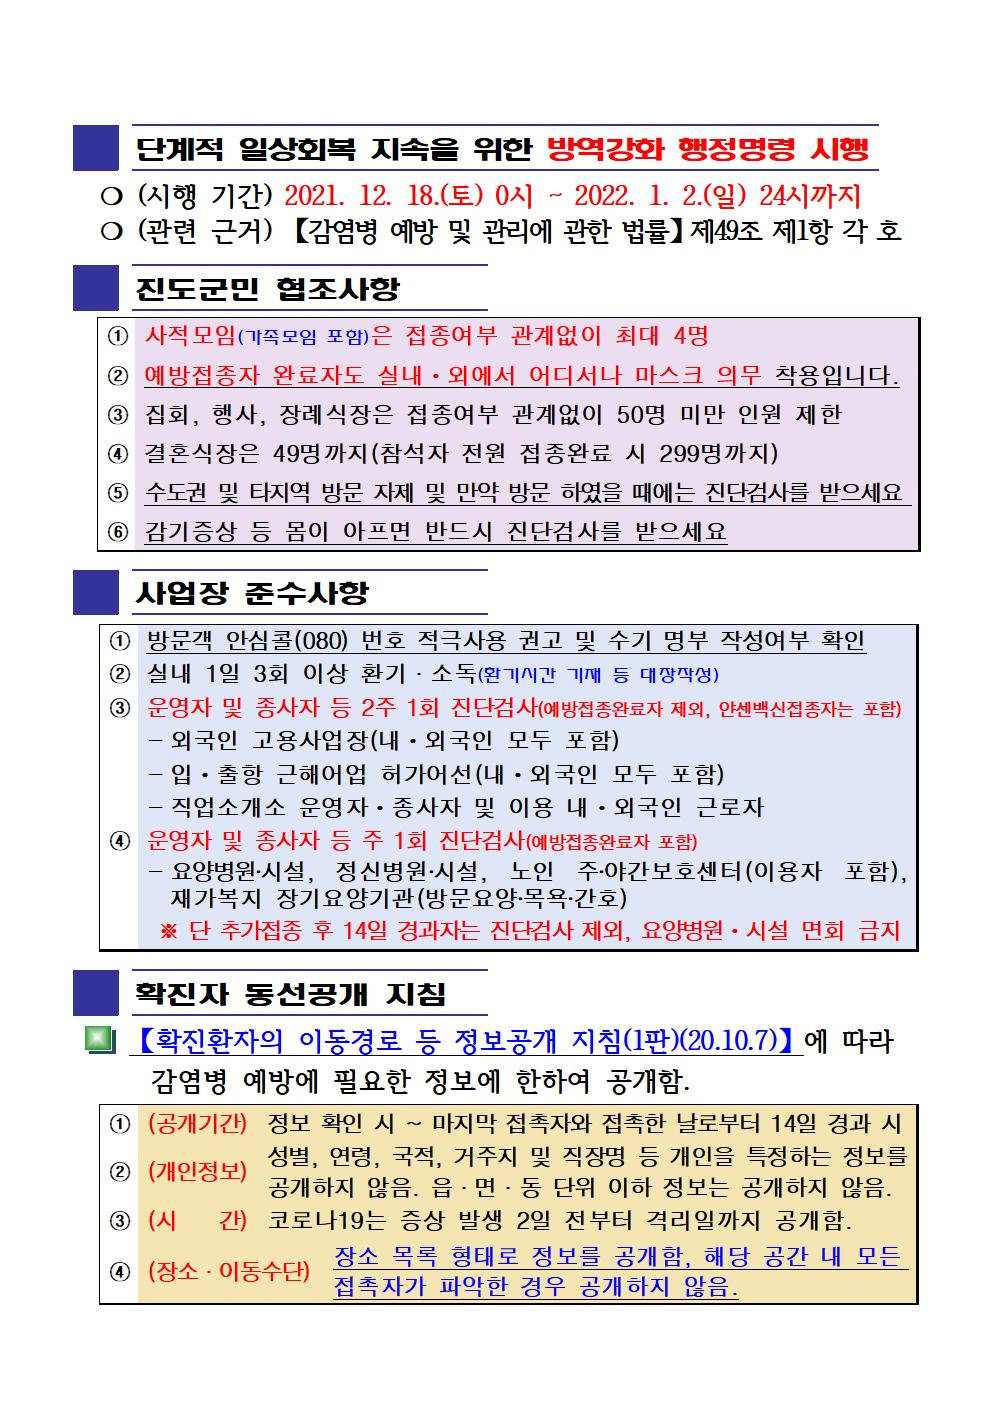 2022년 코로나19 대응 일일상황보고(01월 02일 24시 기준) 첨부#2